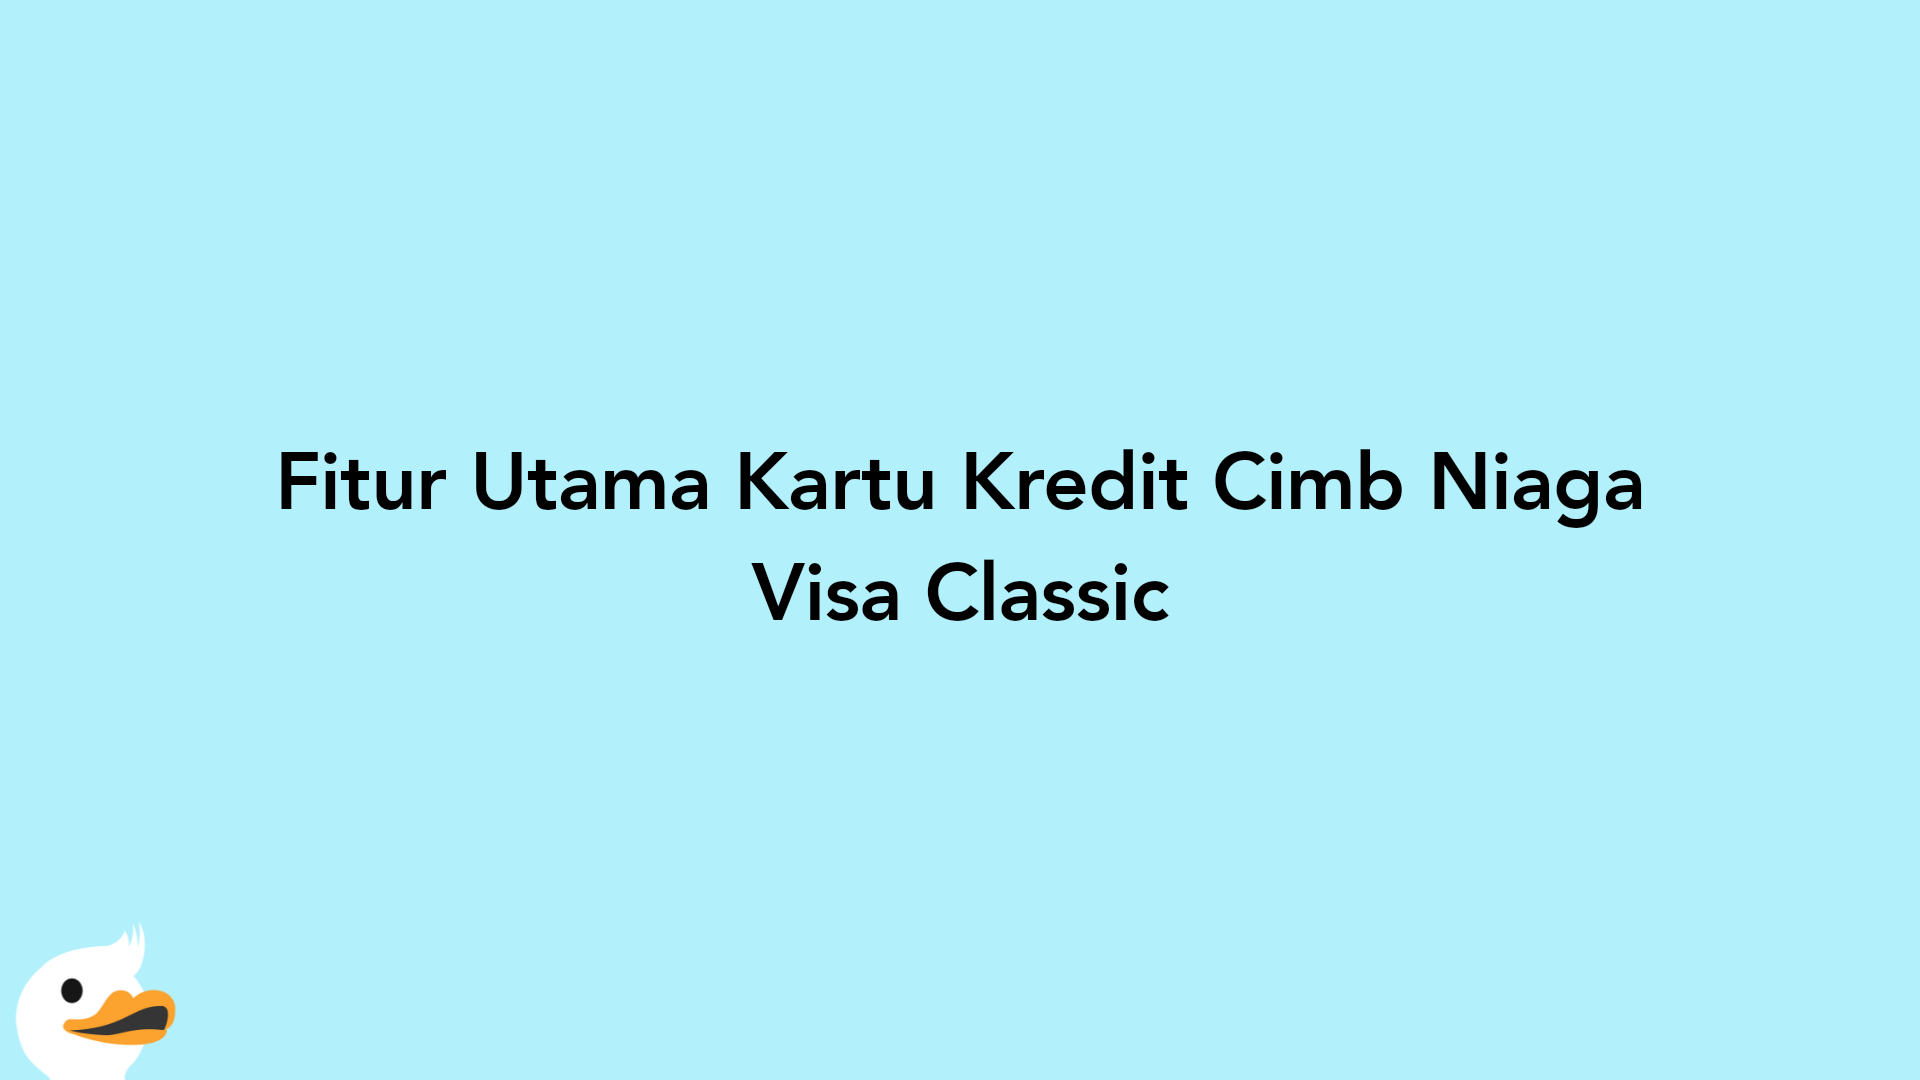 Fitur Utama Kartu Kredit Cimb Niaga Visa Classic